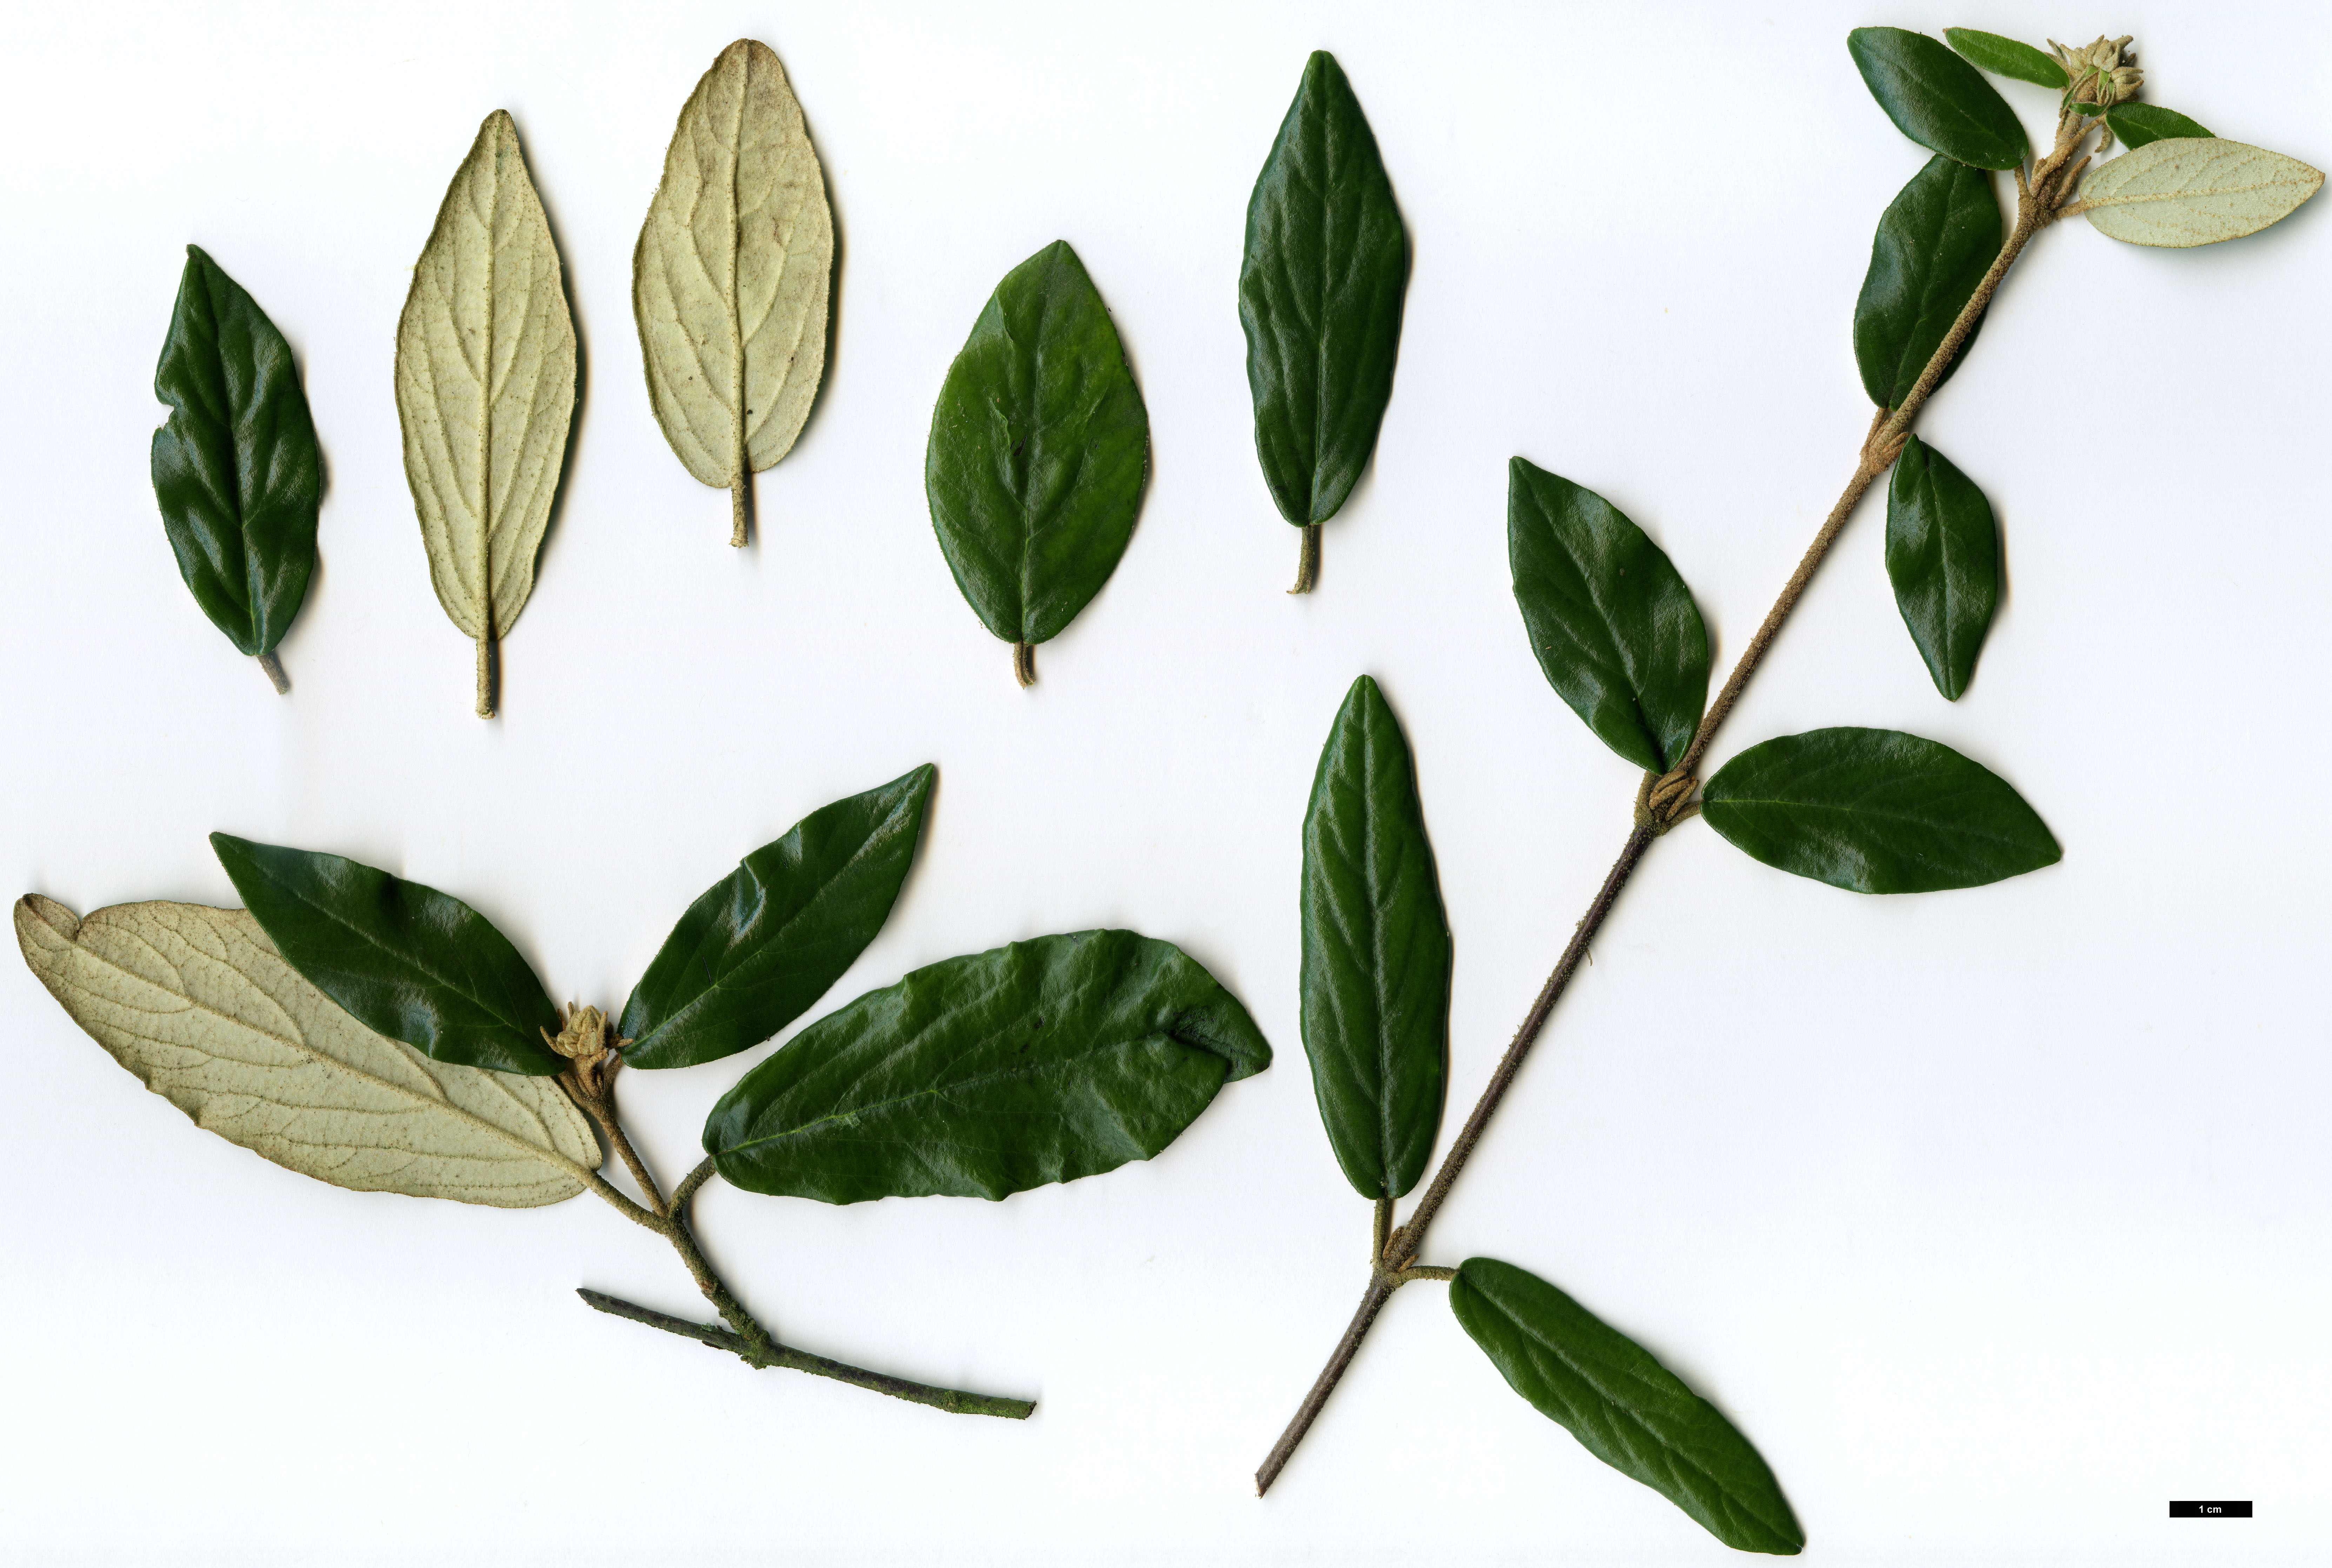 High resolution image: Family: Adoxaceae - Genus: Viburnum - Taxon: utile